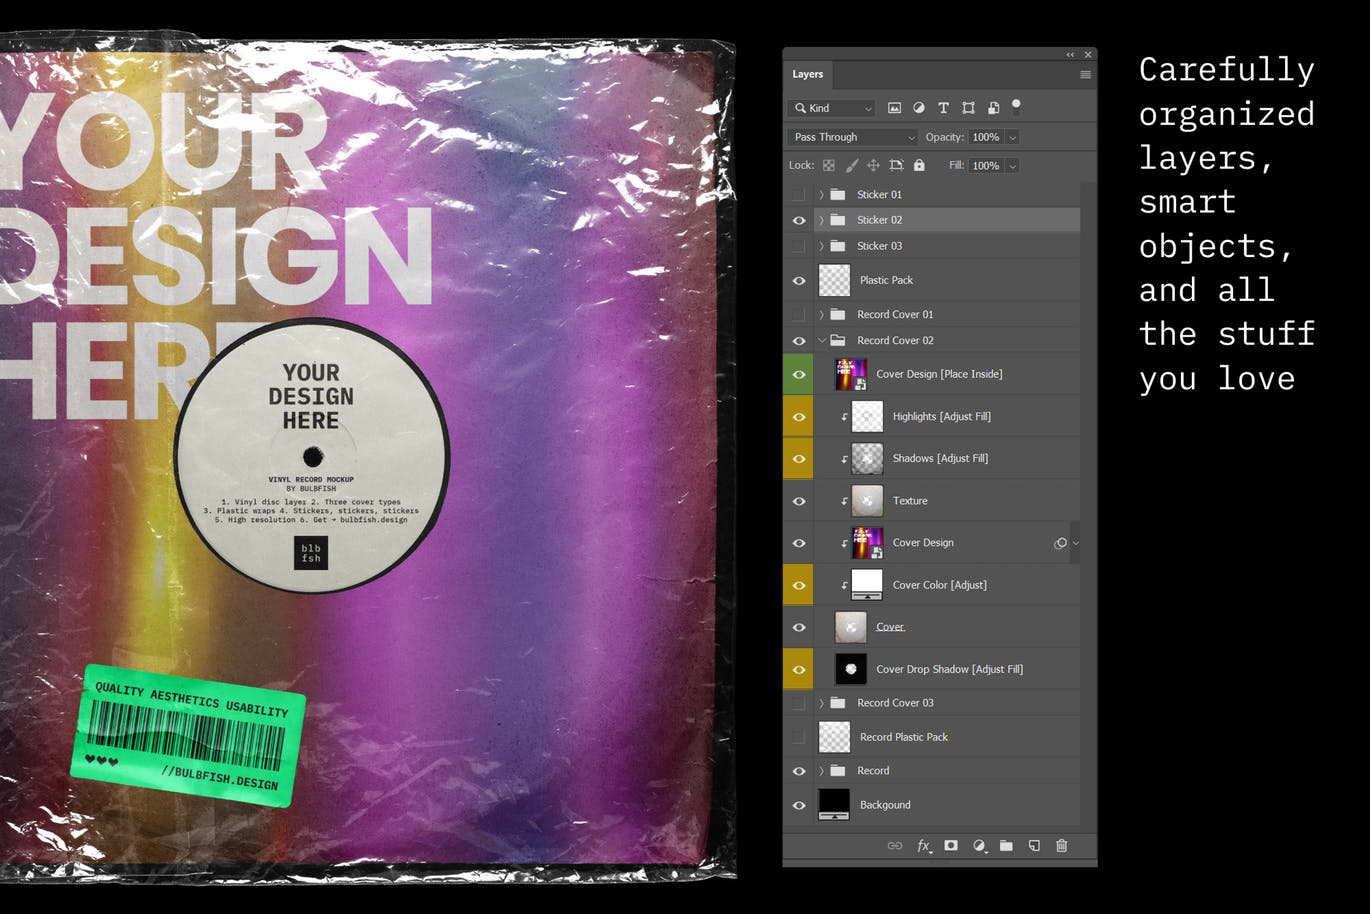 乙烯基唱片包装盒及封面设计图第一素材精选模板 Vinyl Record Mockup插图(3)